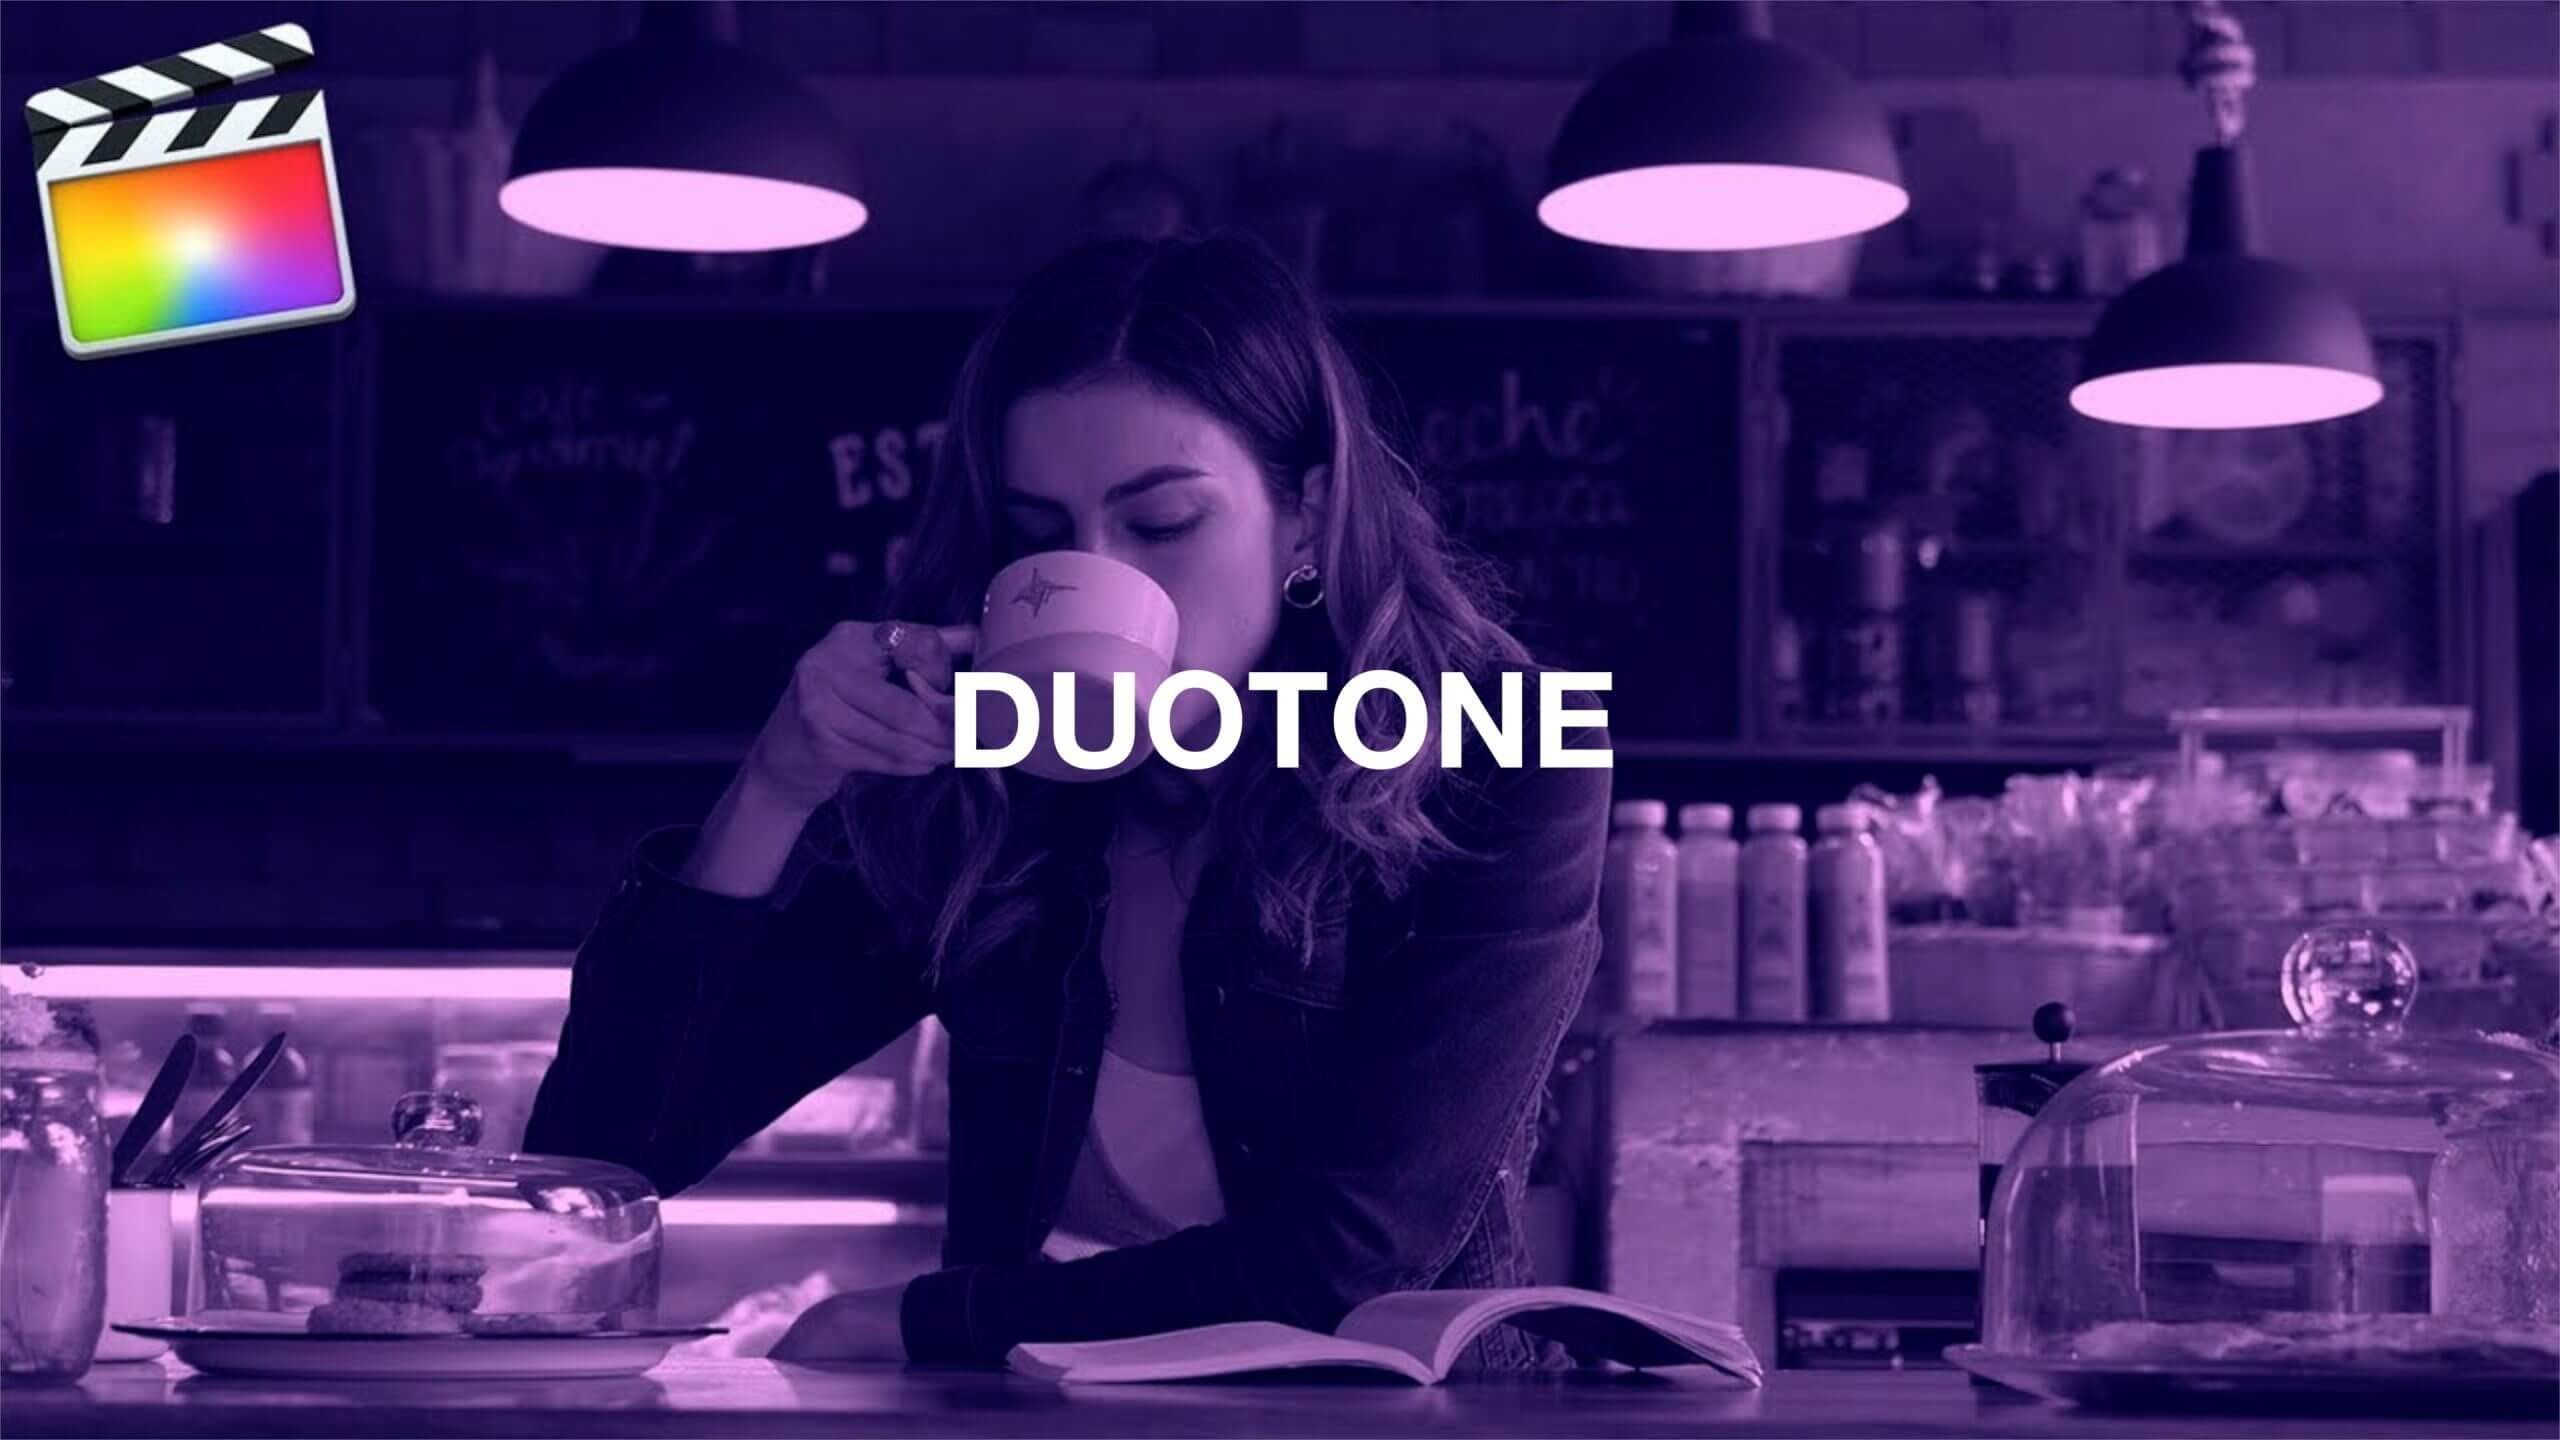 Final Cut Pro X デュオトーン「Duotone」2色の映像にする方法